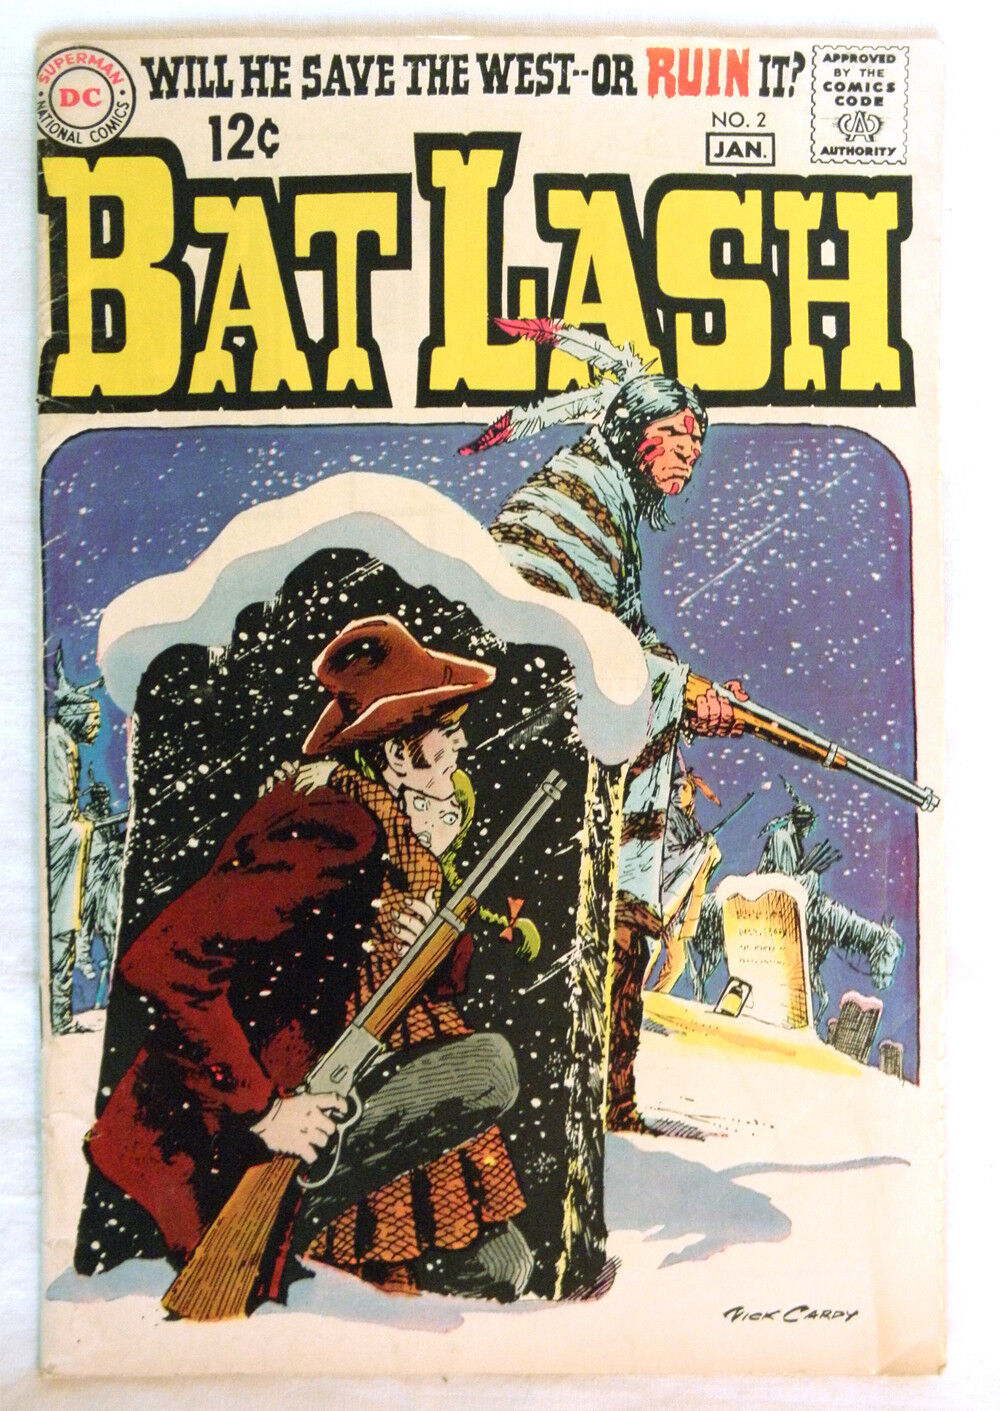 VTG 1968 Bat Lash #2 Western NICK CARDY Silver Age DC Cowboy Gunfighter FN/VF